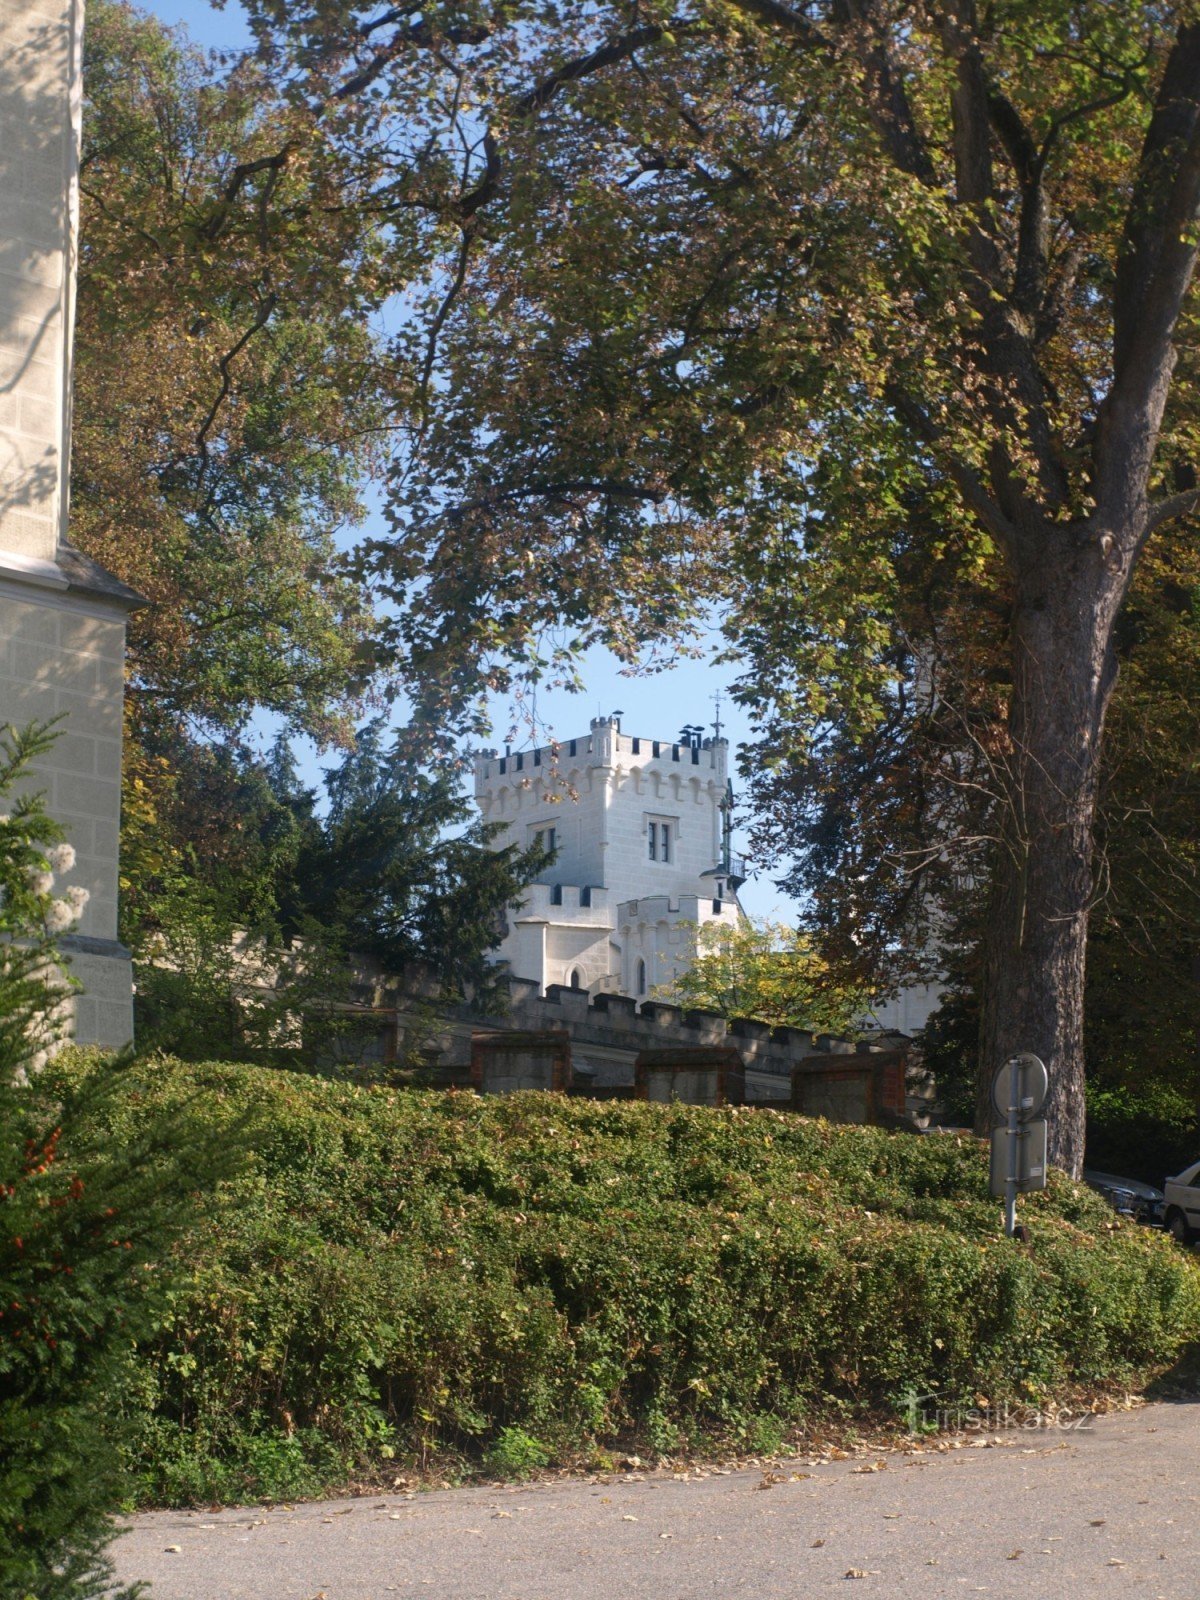 Castelul Hluboká nad Vltavou